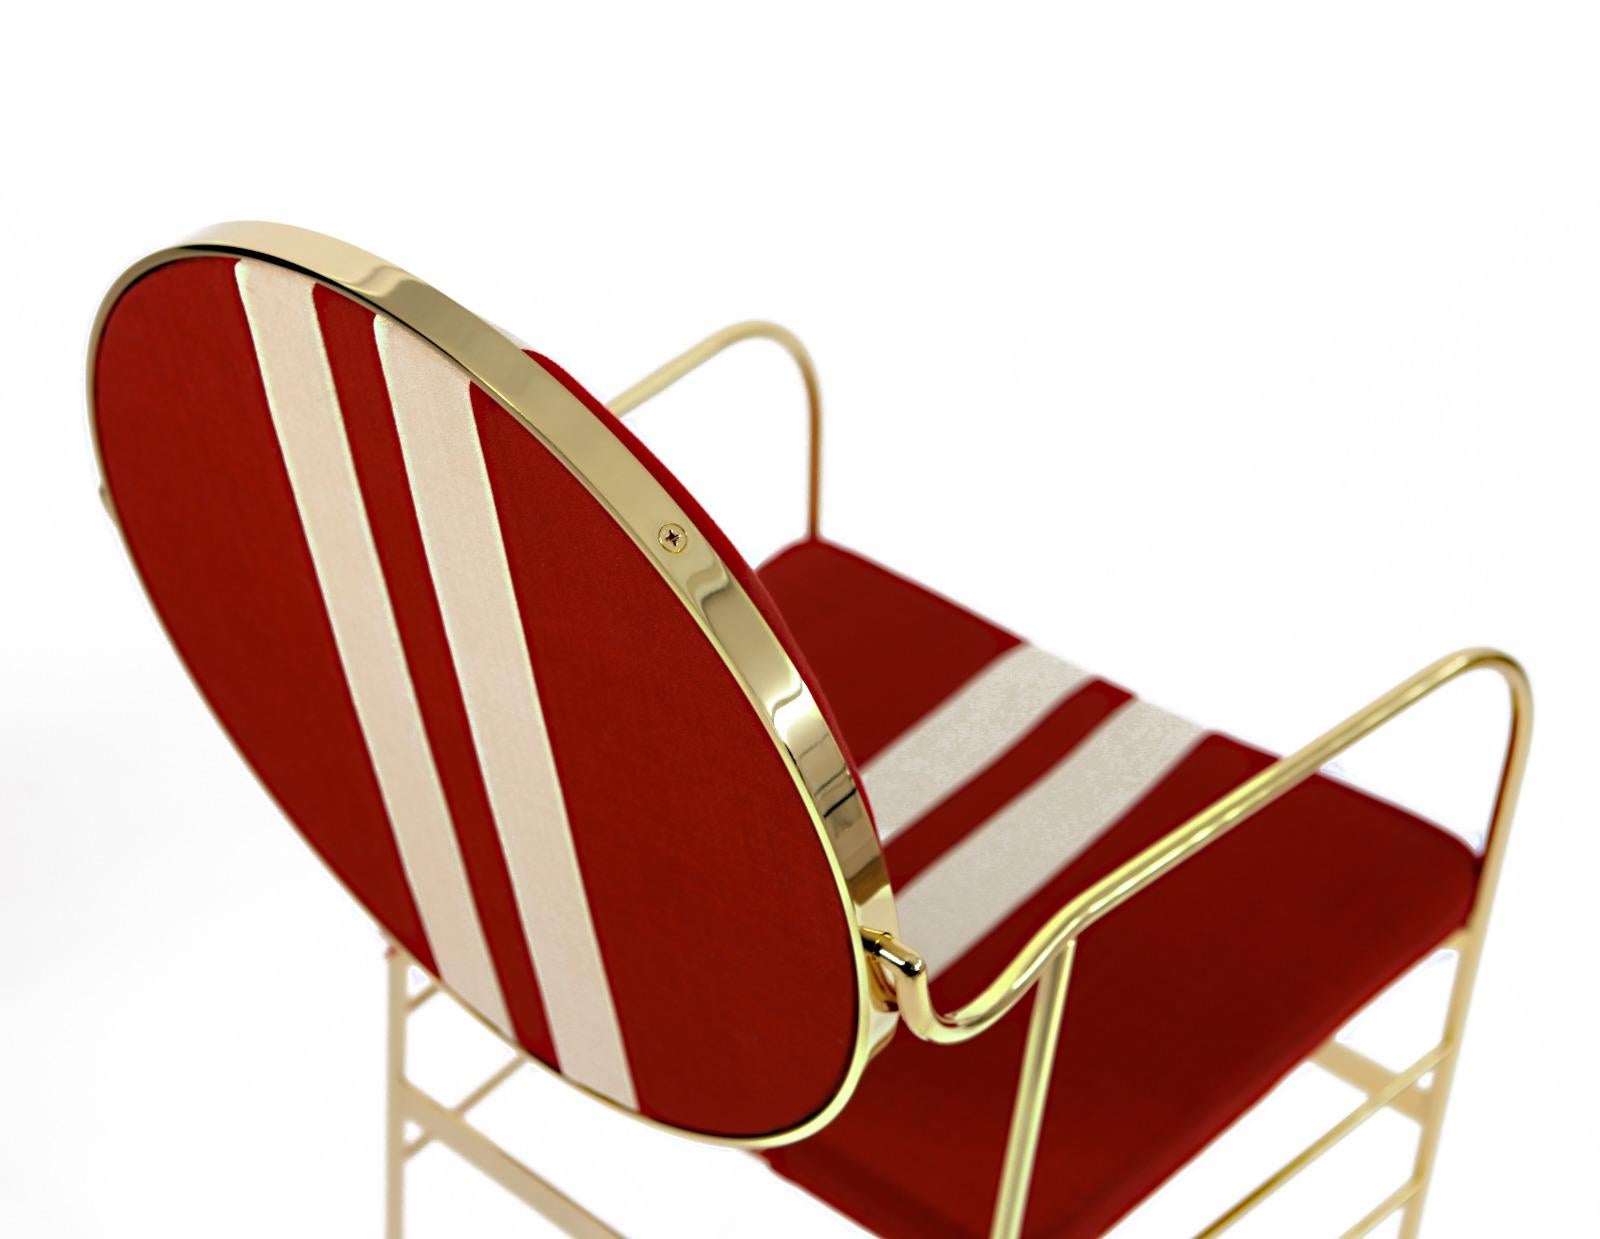 Cette chaise étonnante est dotée d'un cadre en fer recouvert d'une couche d'or 24 carats et d'élégants pieds en laiton galvanisé. Le dossier peut pivoter sur son propre cadre afin d'obtenir l'inclinaison parfaite. Le tissu du dossier et des sièges